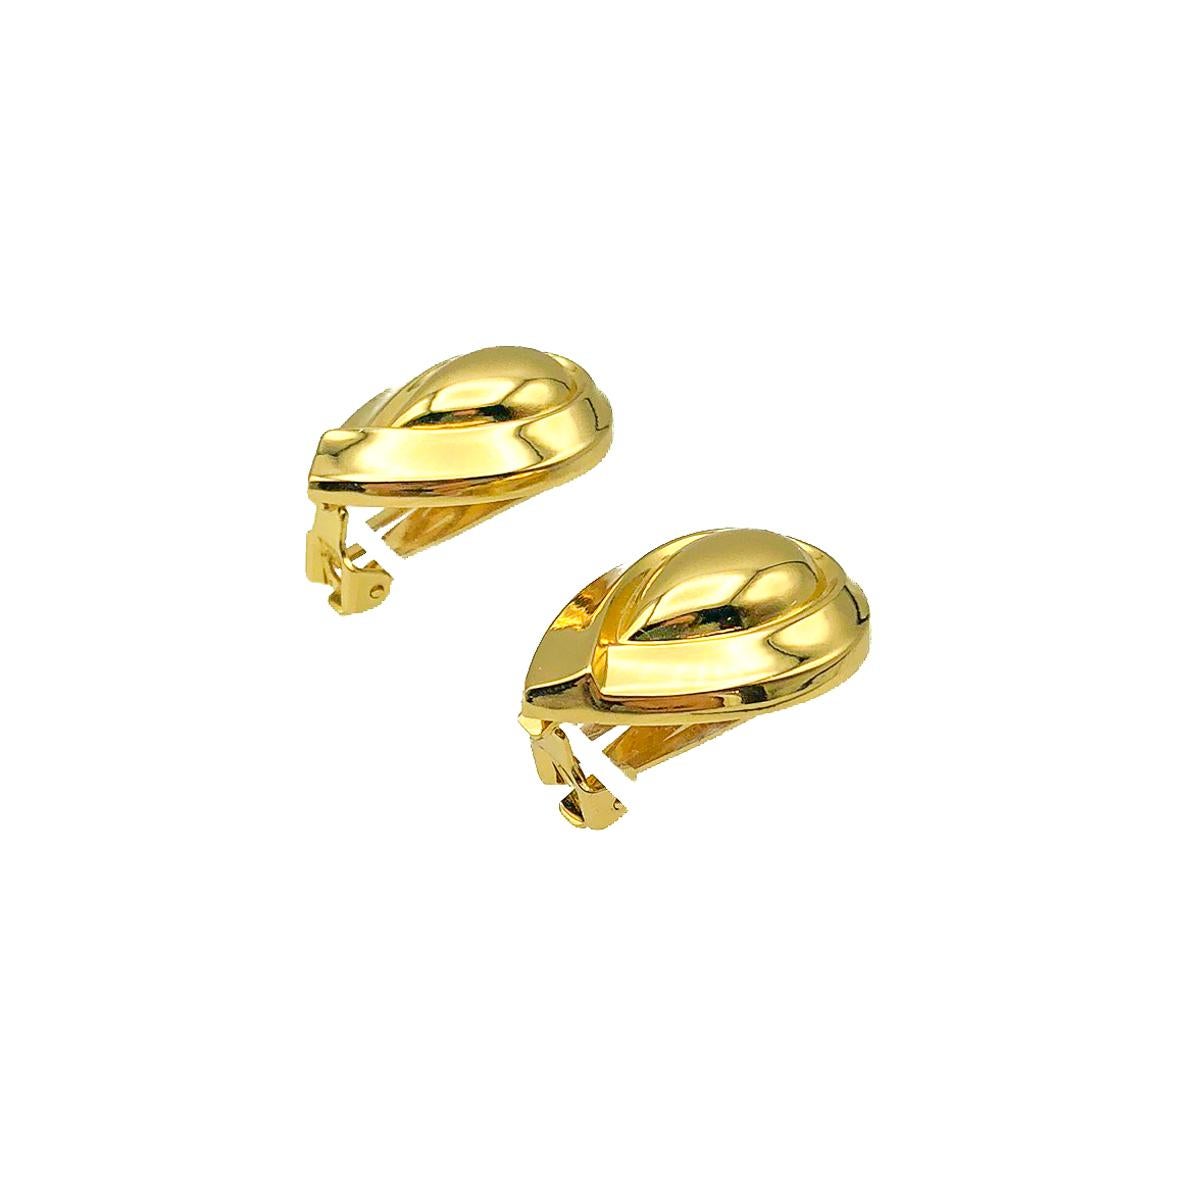 Vintage Dior Teardrop-Ohrringe. Gefertigt aus vergoldetem Metall. In sehr gutem Vintage-Zustand. Unterschrieben. Ca. 3 cm. Der perfekte Ohrring, der von morgens bis abends ein fester Bestandteil Ihres Stils sein wird.

Die 2016 gegründete britische